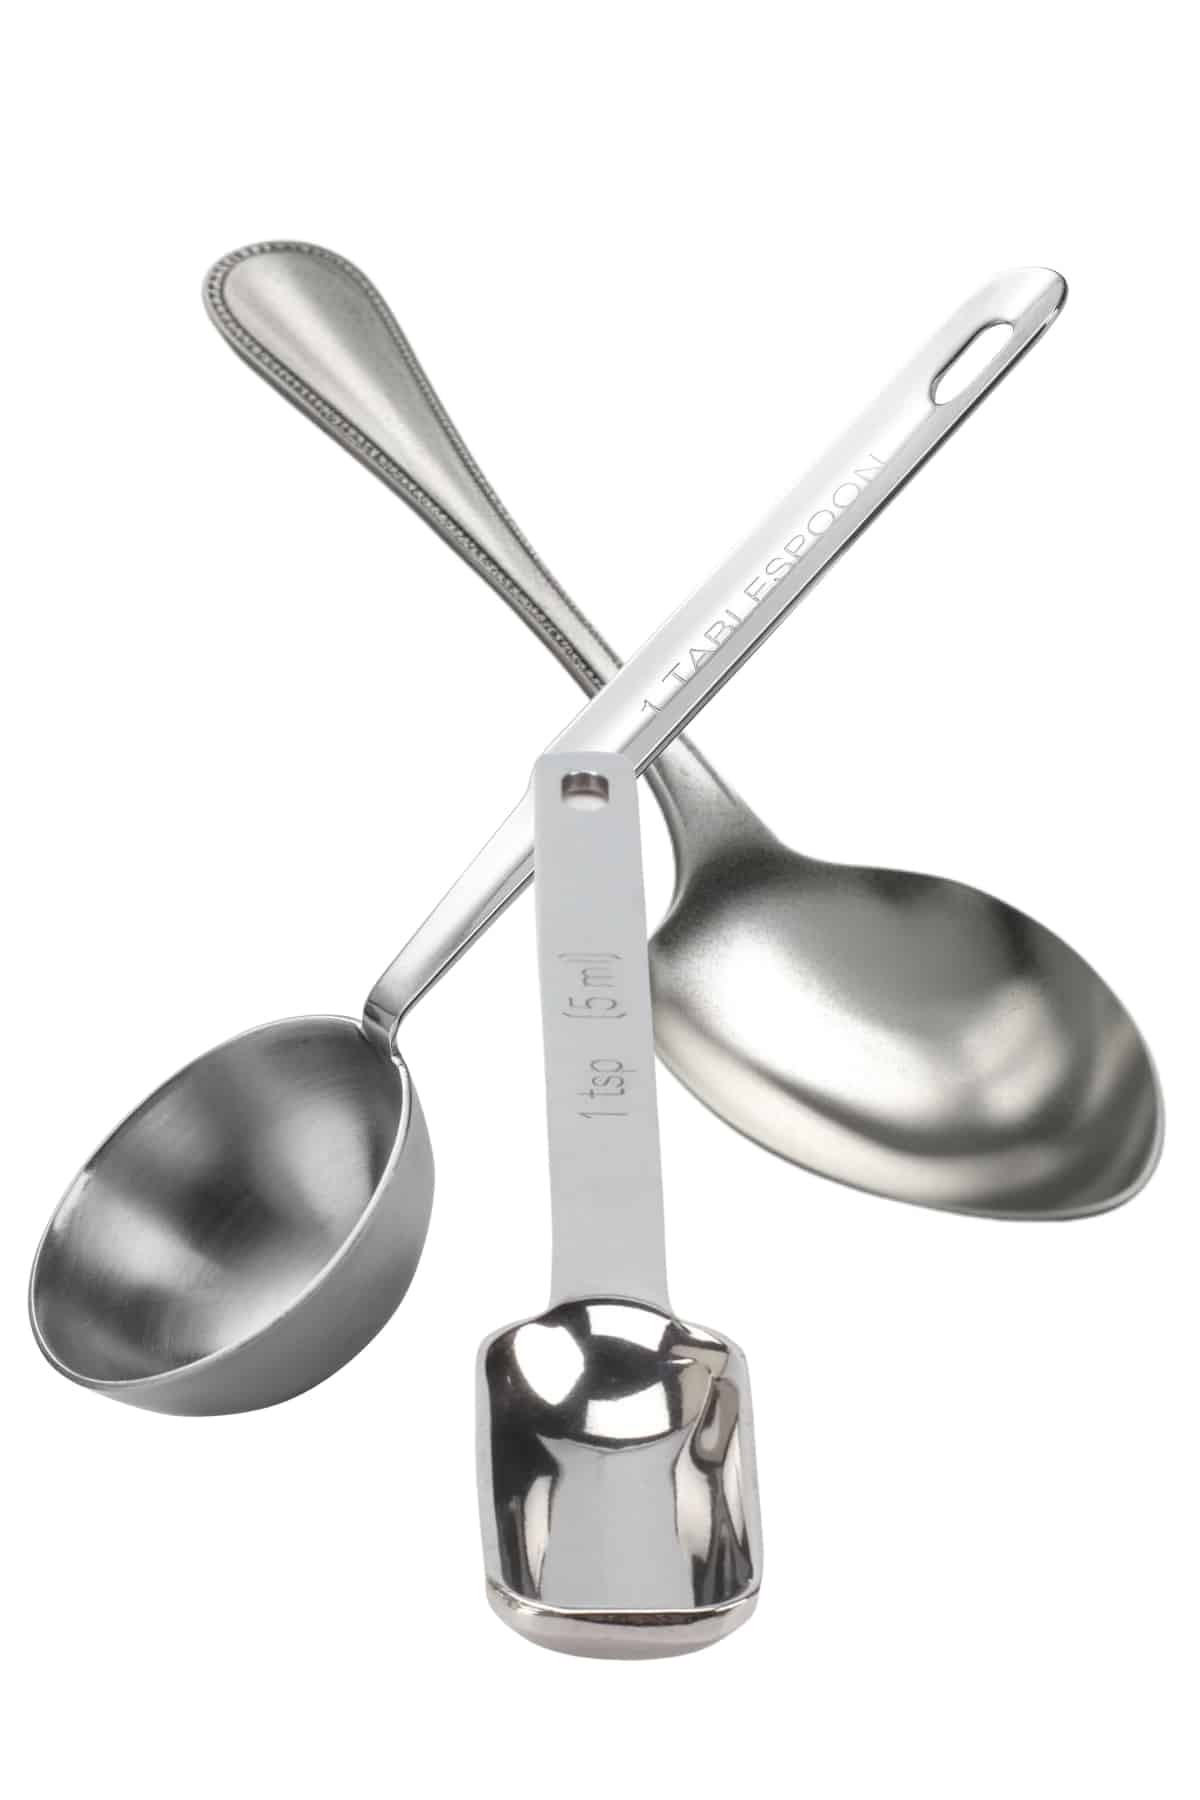 https://www.errenskitchen.com/wp-content/uploads/2023/06/Teaspoon-tablespoon-dessert-spoon.jpg